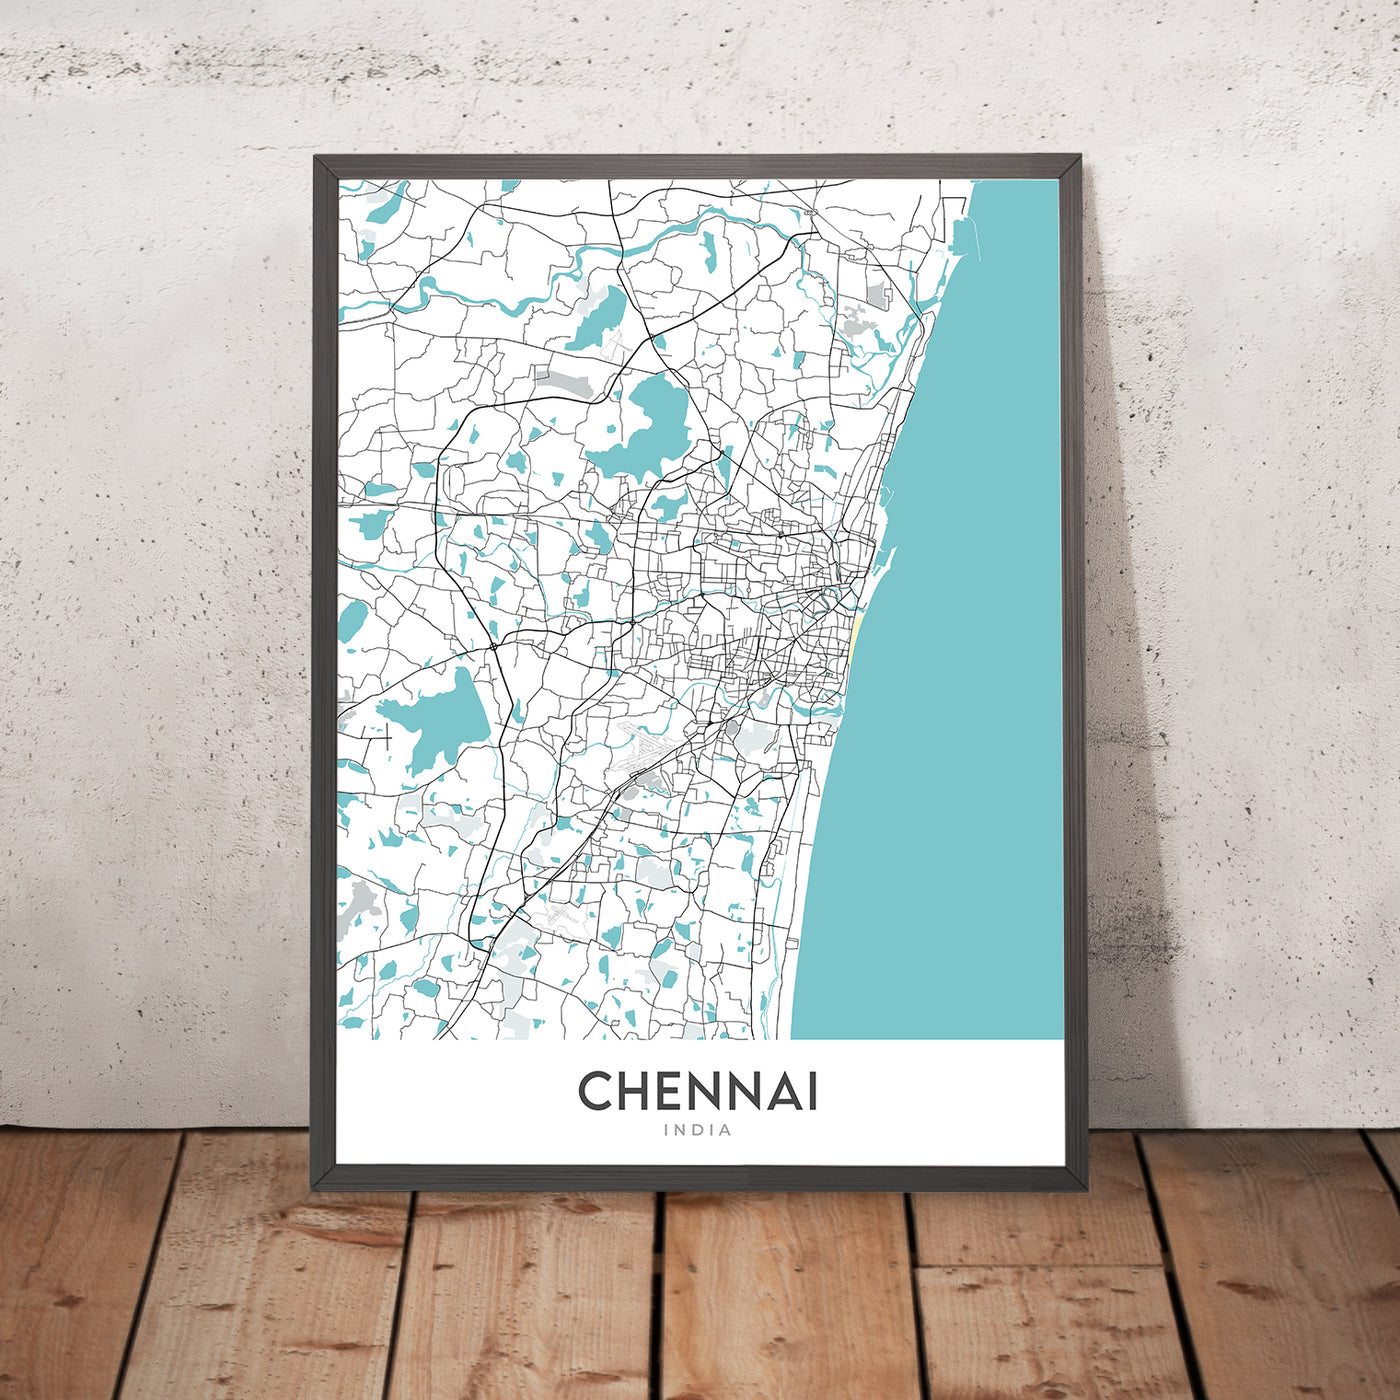 Moderner Stadtplan von Chennai, Indien: Marina Beach, Fort St. George, T. Nagar, Anna Salai, Mylapore